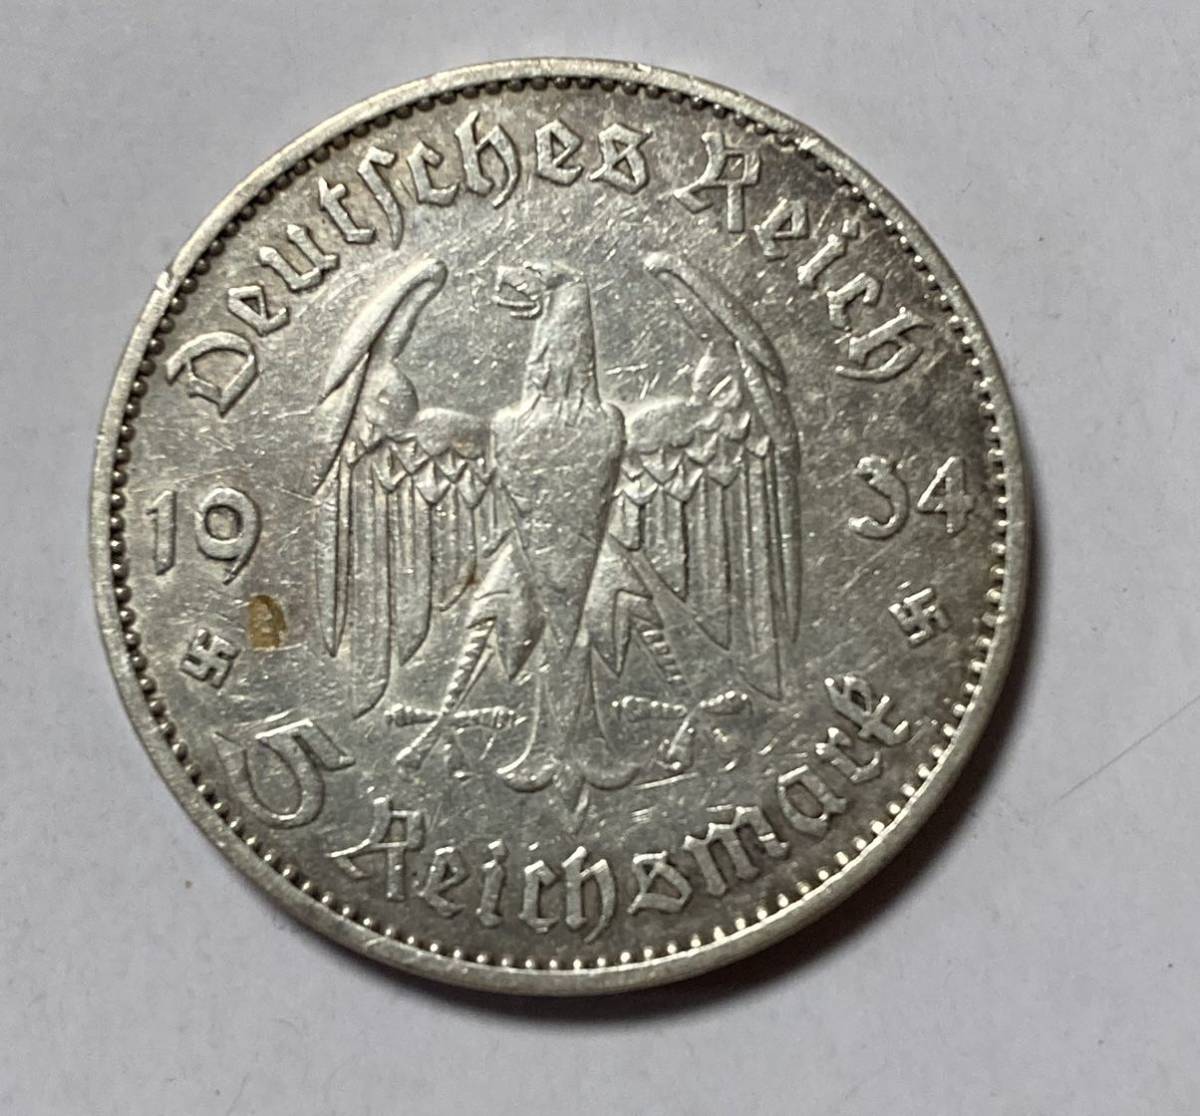 第三帝国-Third Reich. 1934. Silver. 5ライヒスマルク(Reichsmark). 第三帝国 ナチス支配1周年記念 5ライヒスマルク銀貨 1934.._画像1